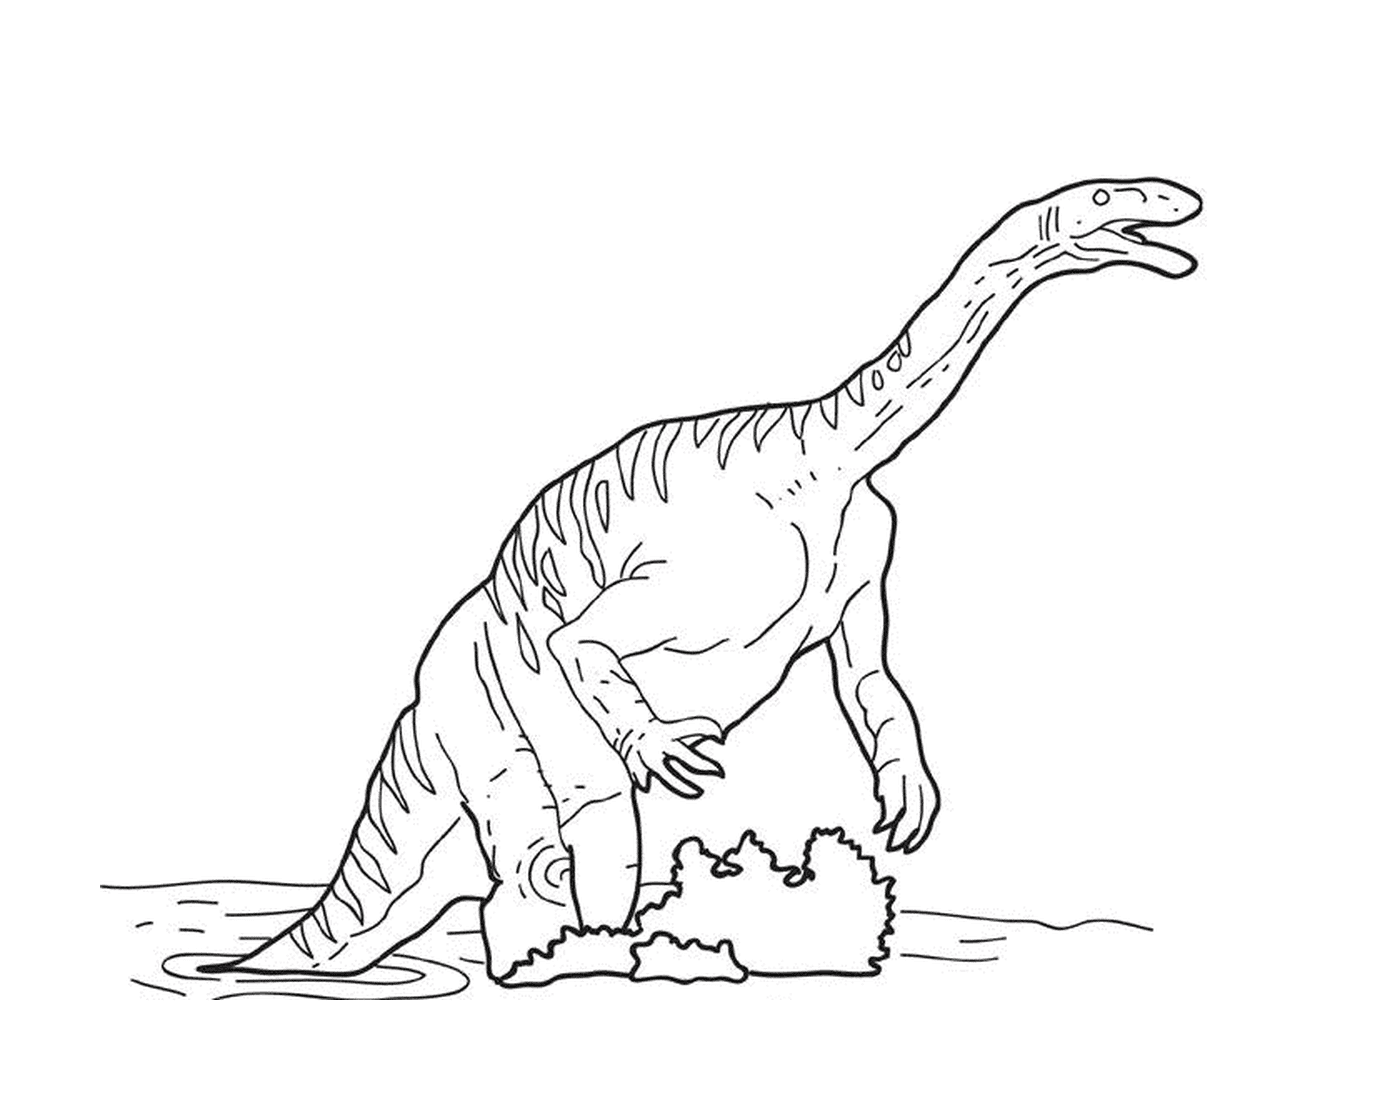  Динозавр играет в воде 